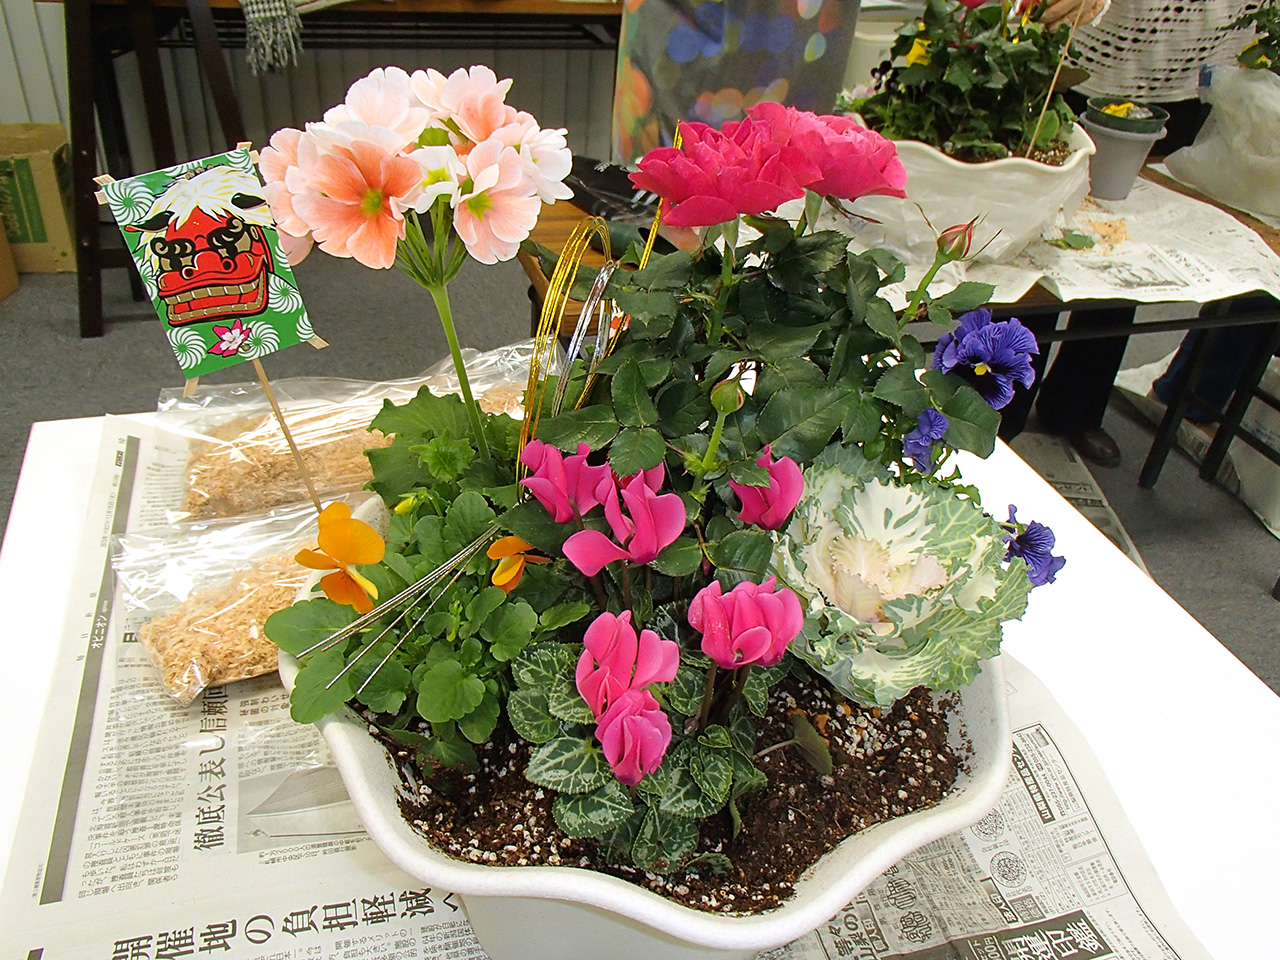 今年のお花のテーマは正月にも使える鮮やかなお花で揃えて頂きました。